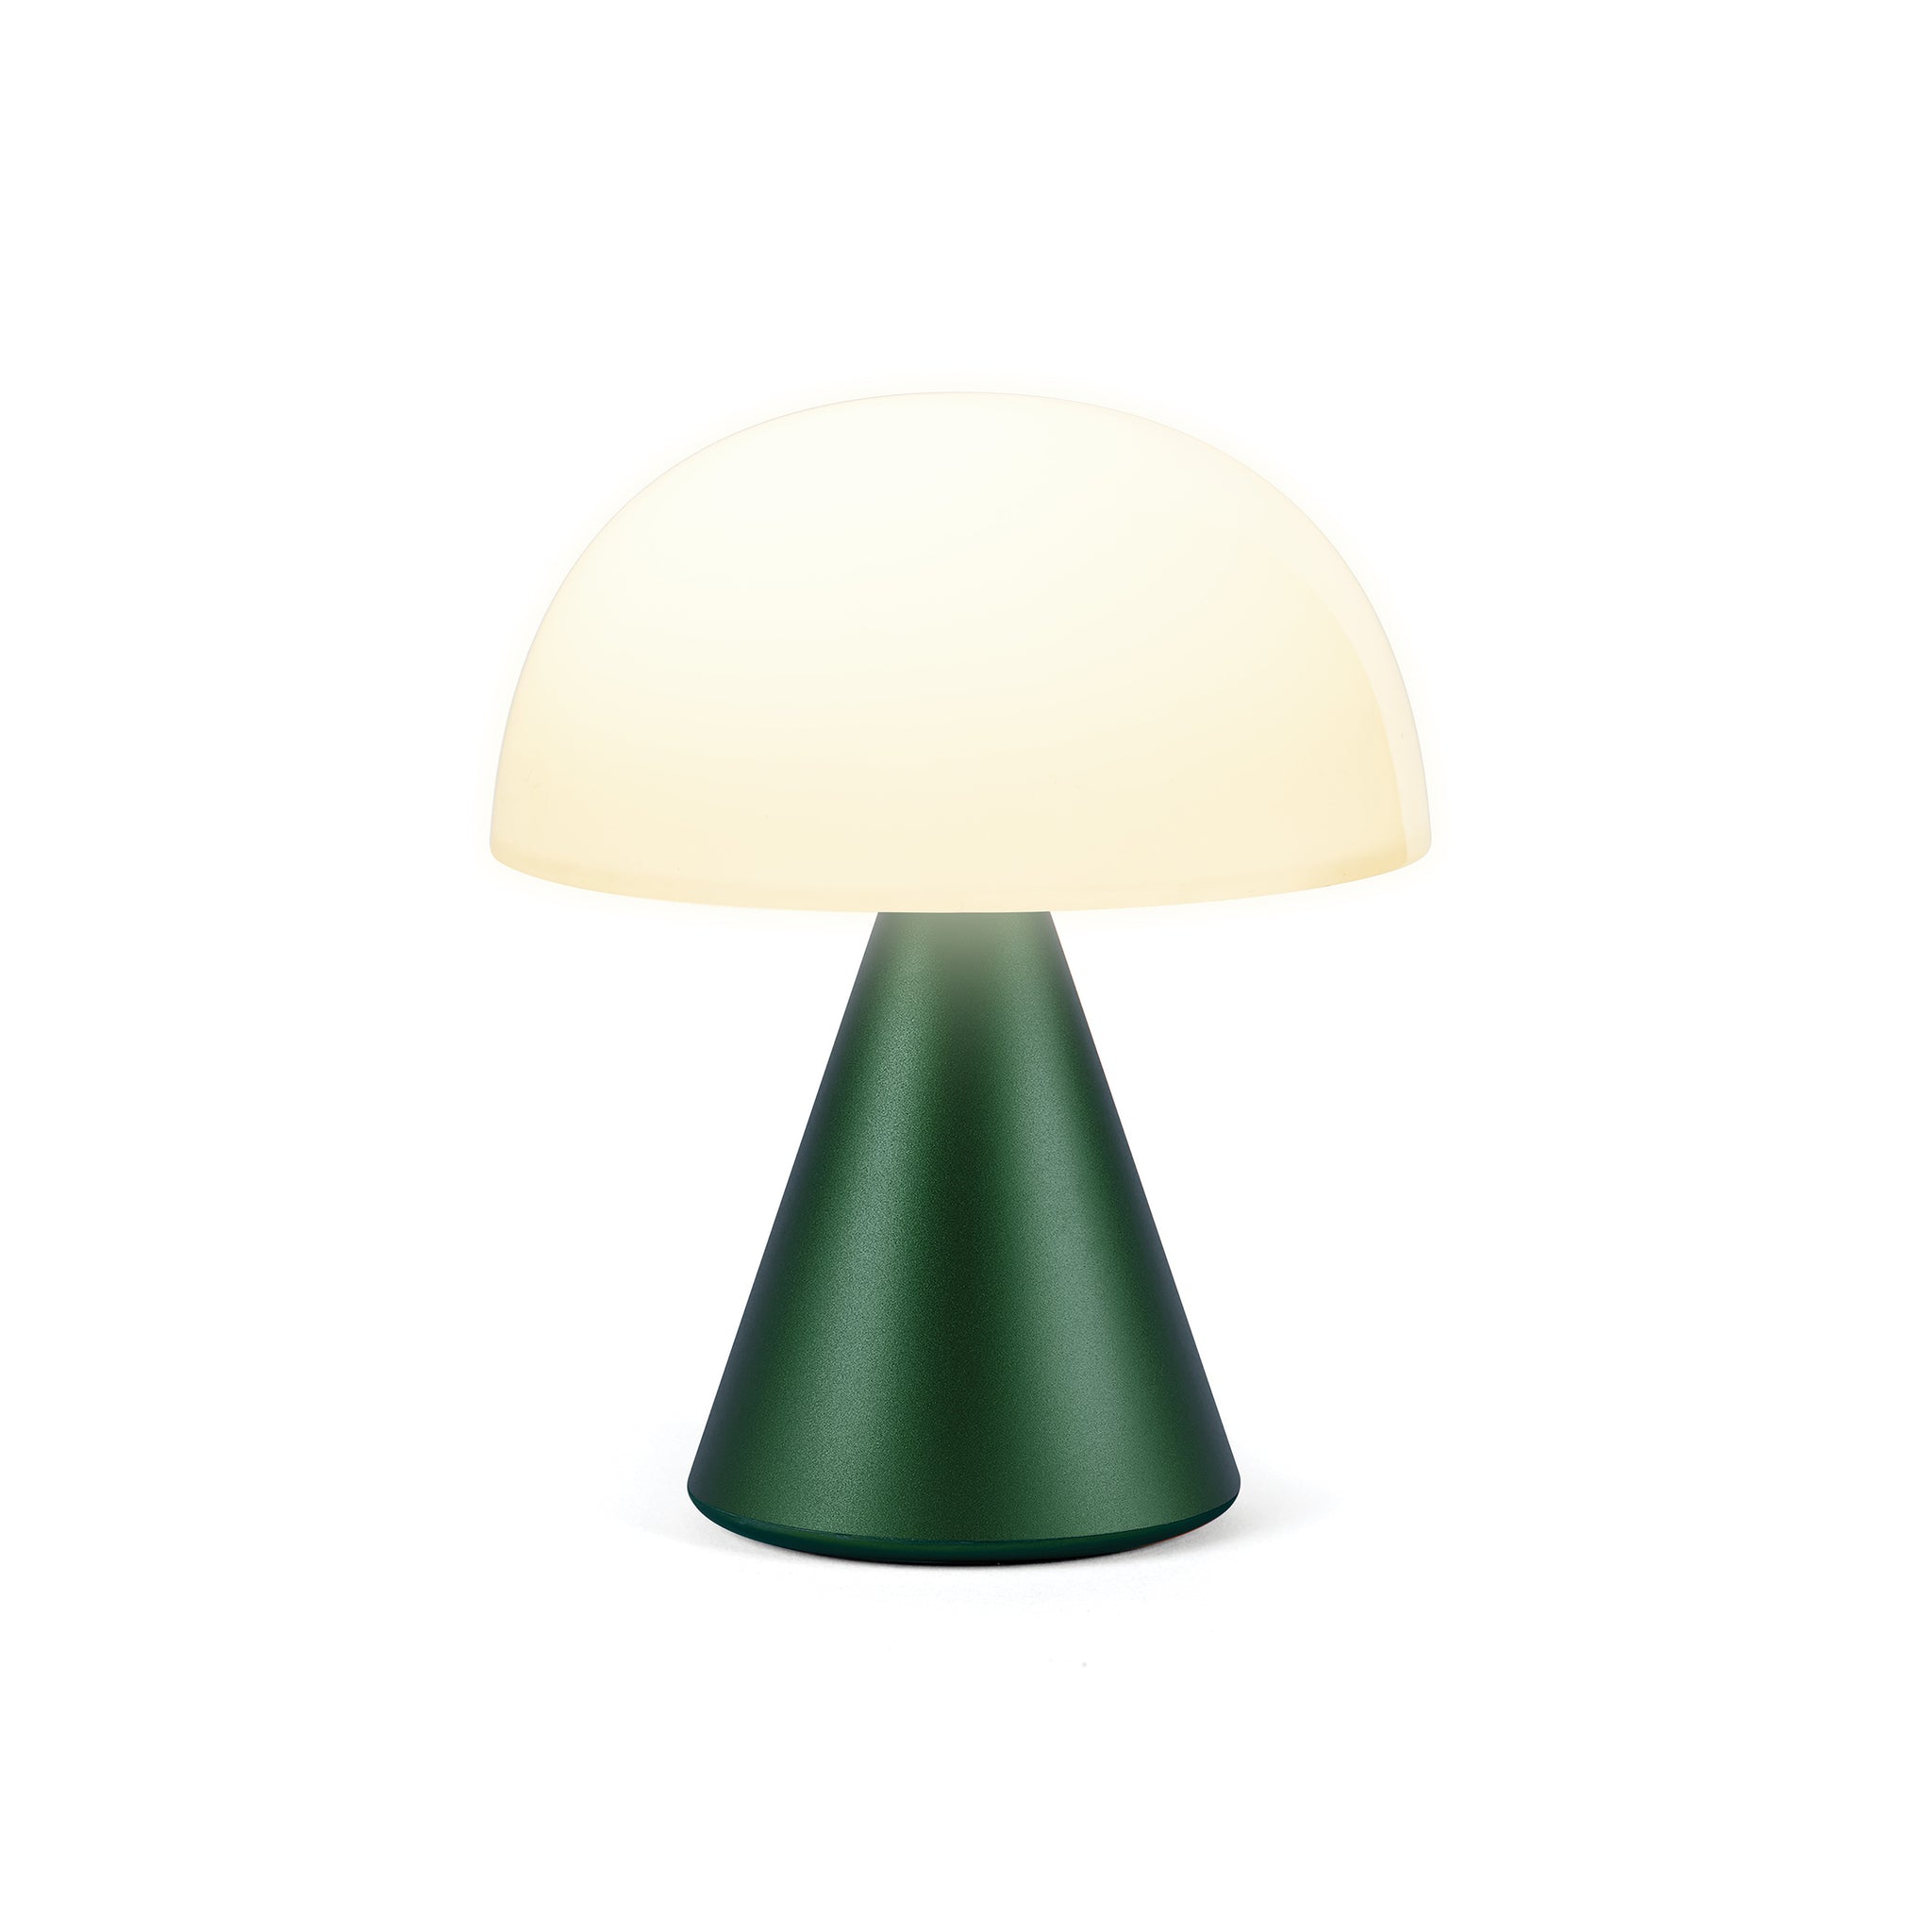 Lexon Mina Medium Donker Groen│Oplaadbare Led-Lamp│art. LH64DG1│vooraanzicht met warm licht aan